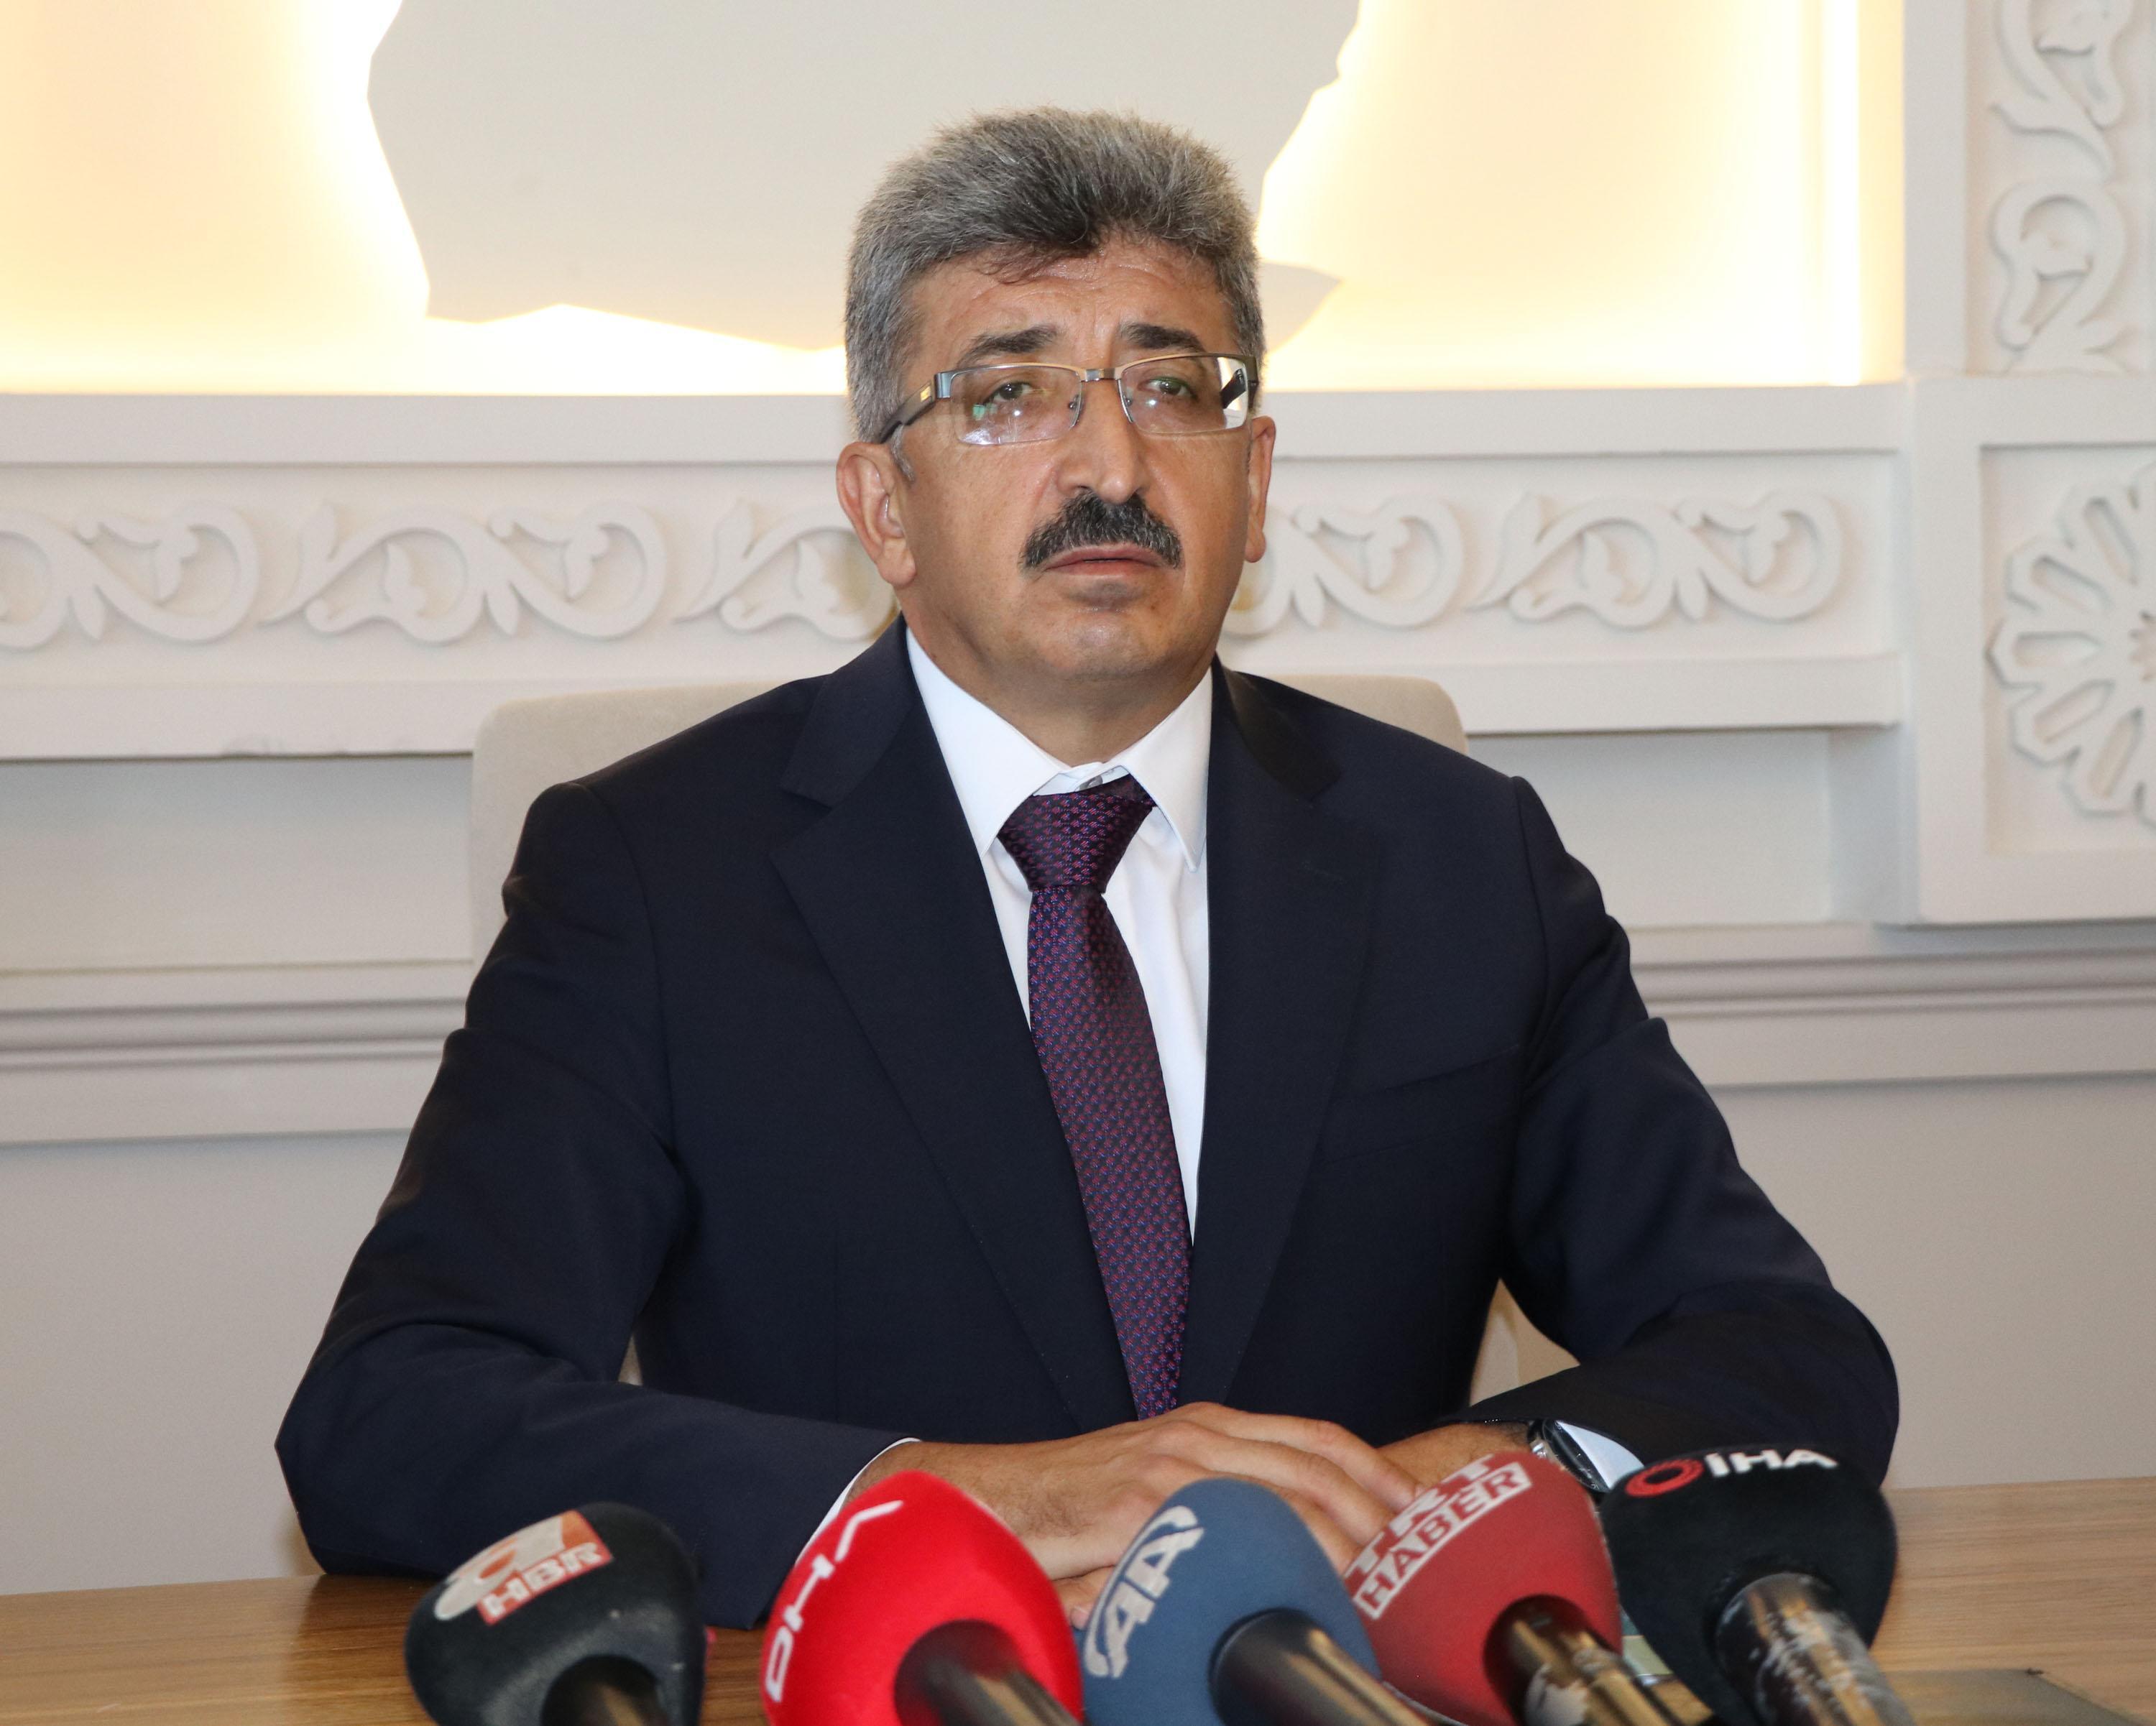 İçişleri Bakanlığı, Diyarbakır, Van ve Mardin büyükşehir belediye başkanlarının görevden uzaklaştırıldığını açıkladı